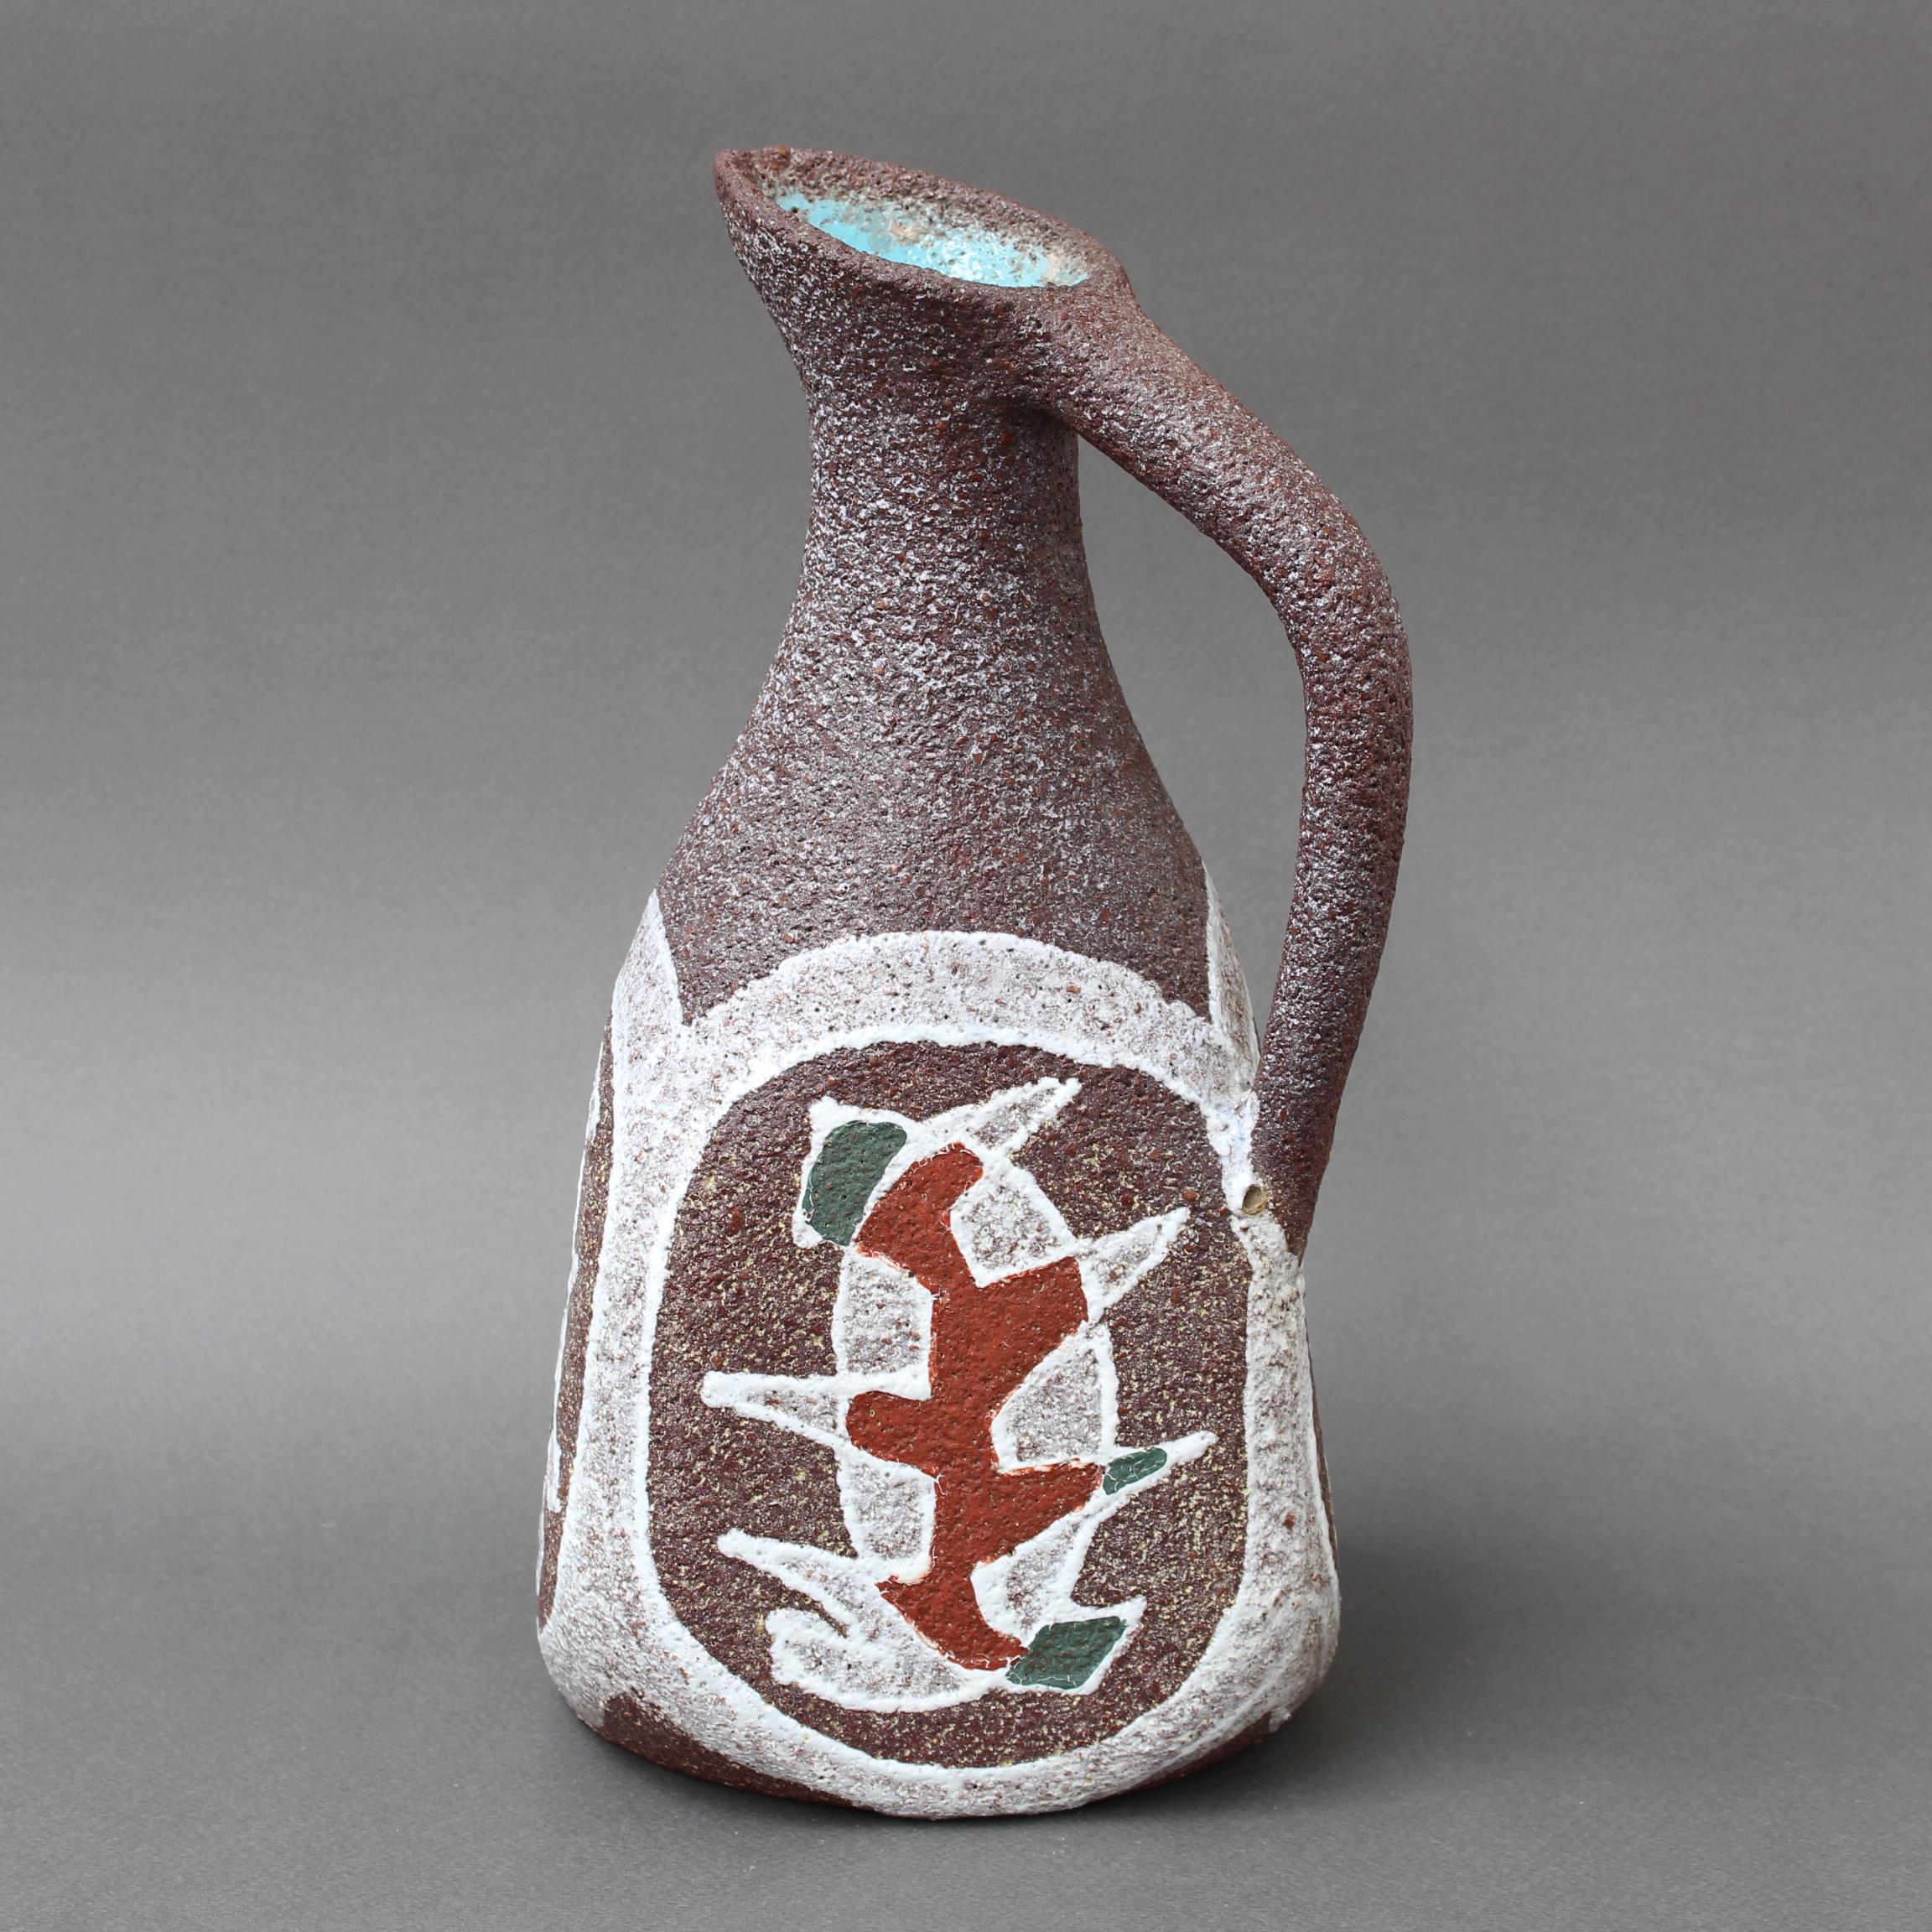 Vase / pichet décoratif en céramique du milieu du siècle par Accolay (vers les années 1960). Une pièce de forme classique de l'Antiquité est réinterprétée dans le style unique d'Accolay. Le pichet présente des courbes douces et sensuelles et une